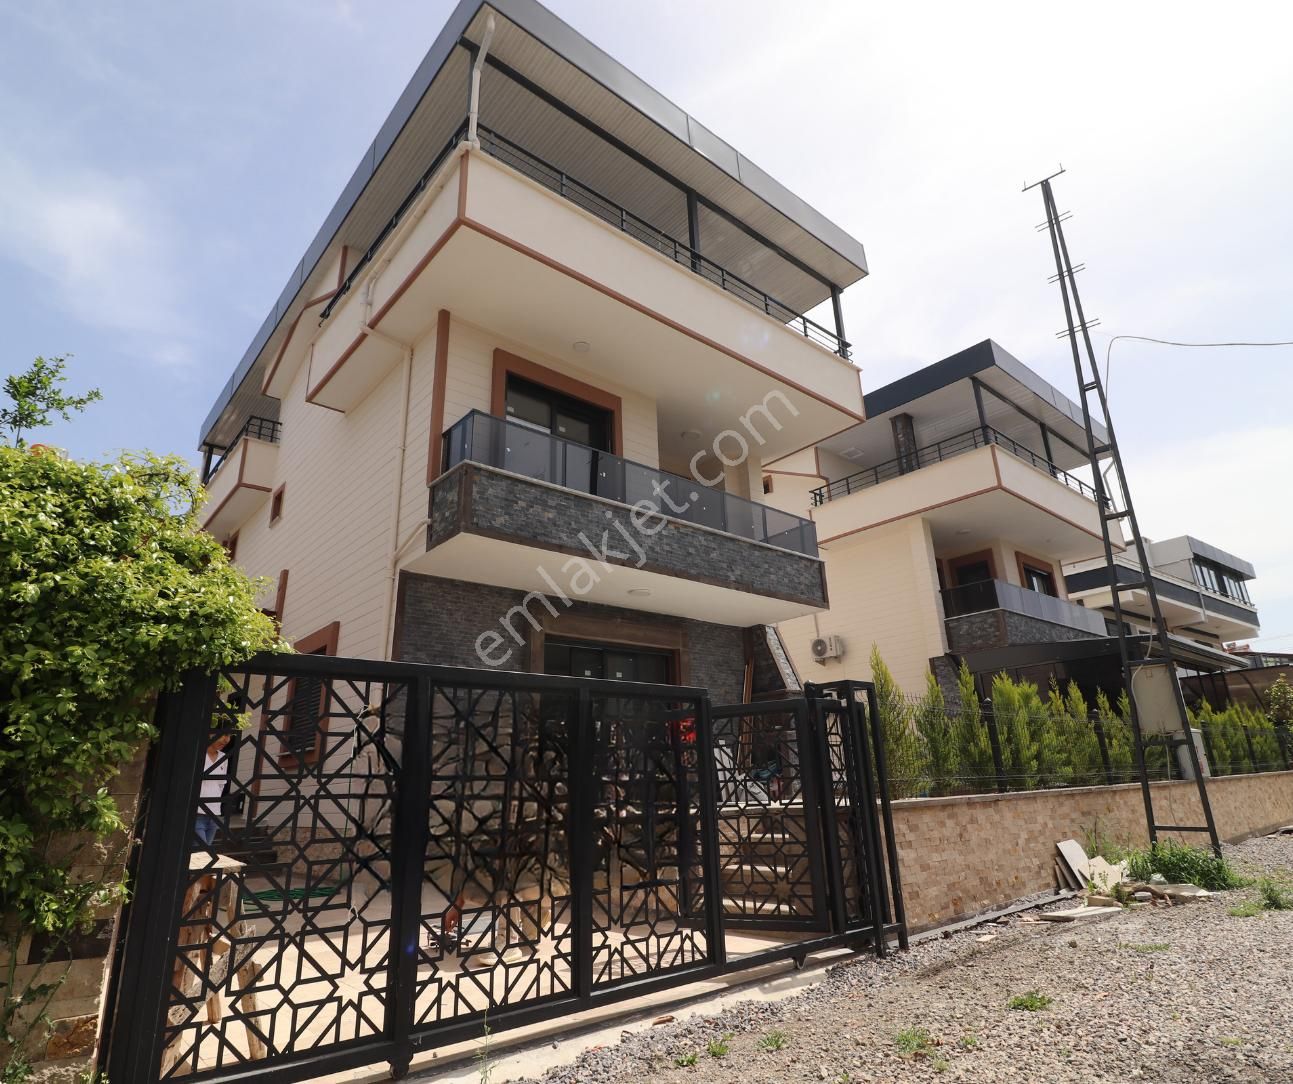 Edremit Güre Cumhuriyet Satılık Villa  ŞEHİR KAOSUNDAN UZAK HUZURLU TAM MÜSTAKİL 4+1 VİLLA